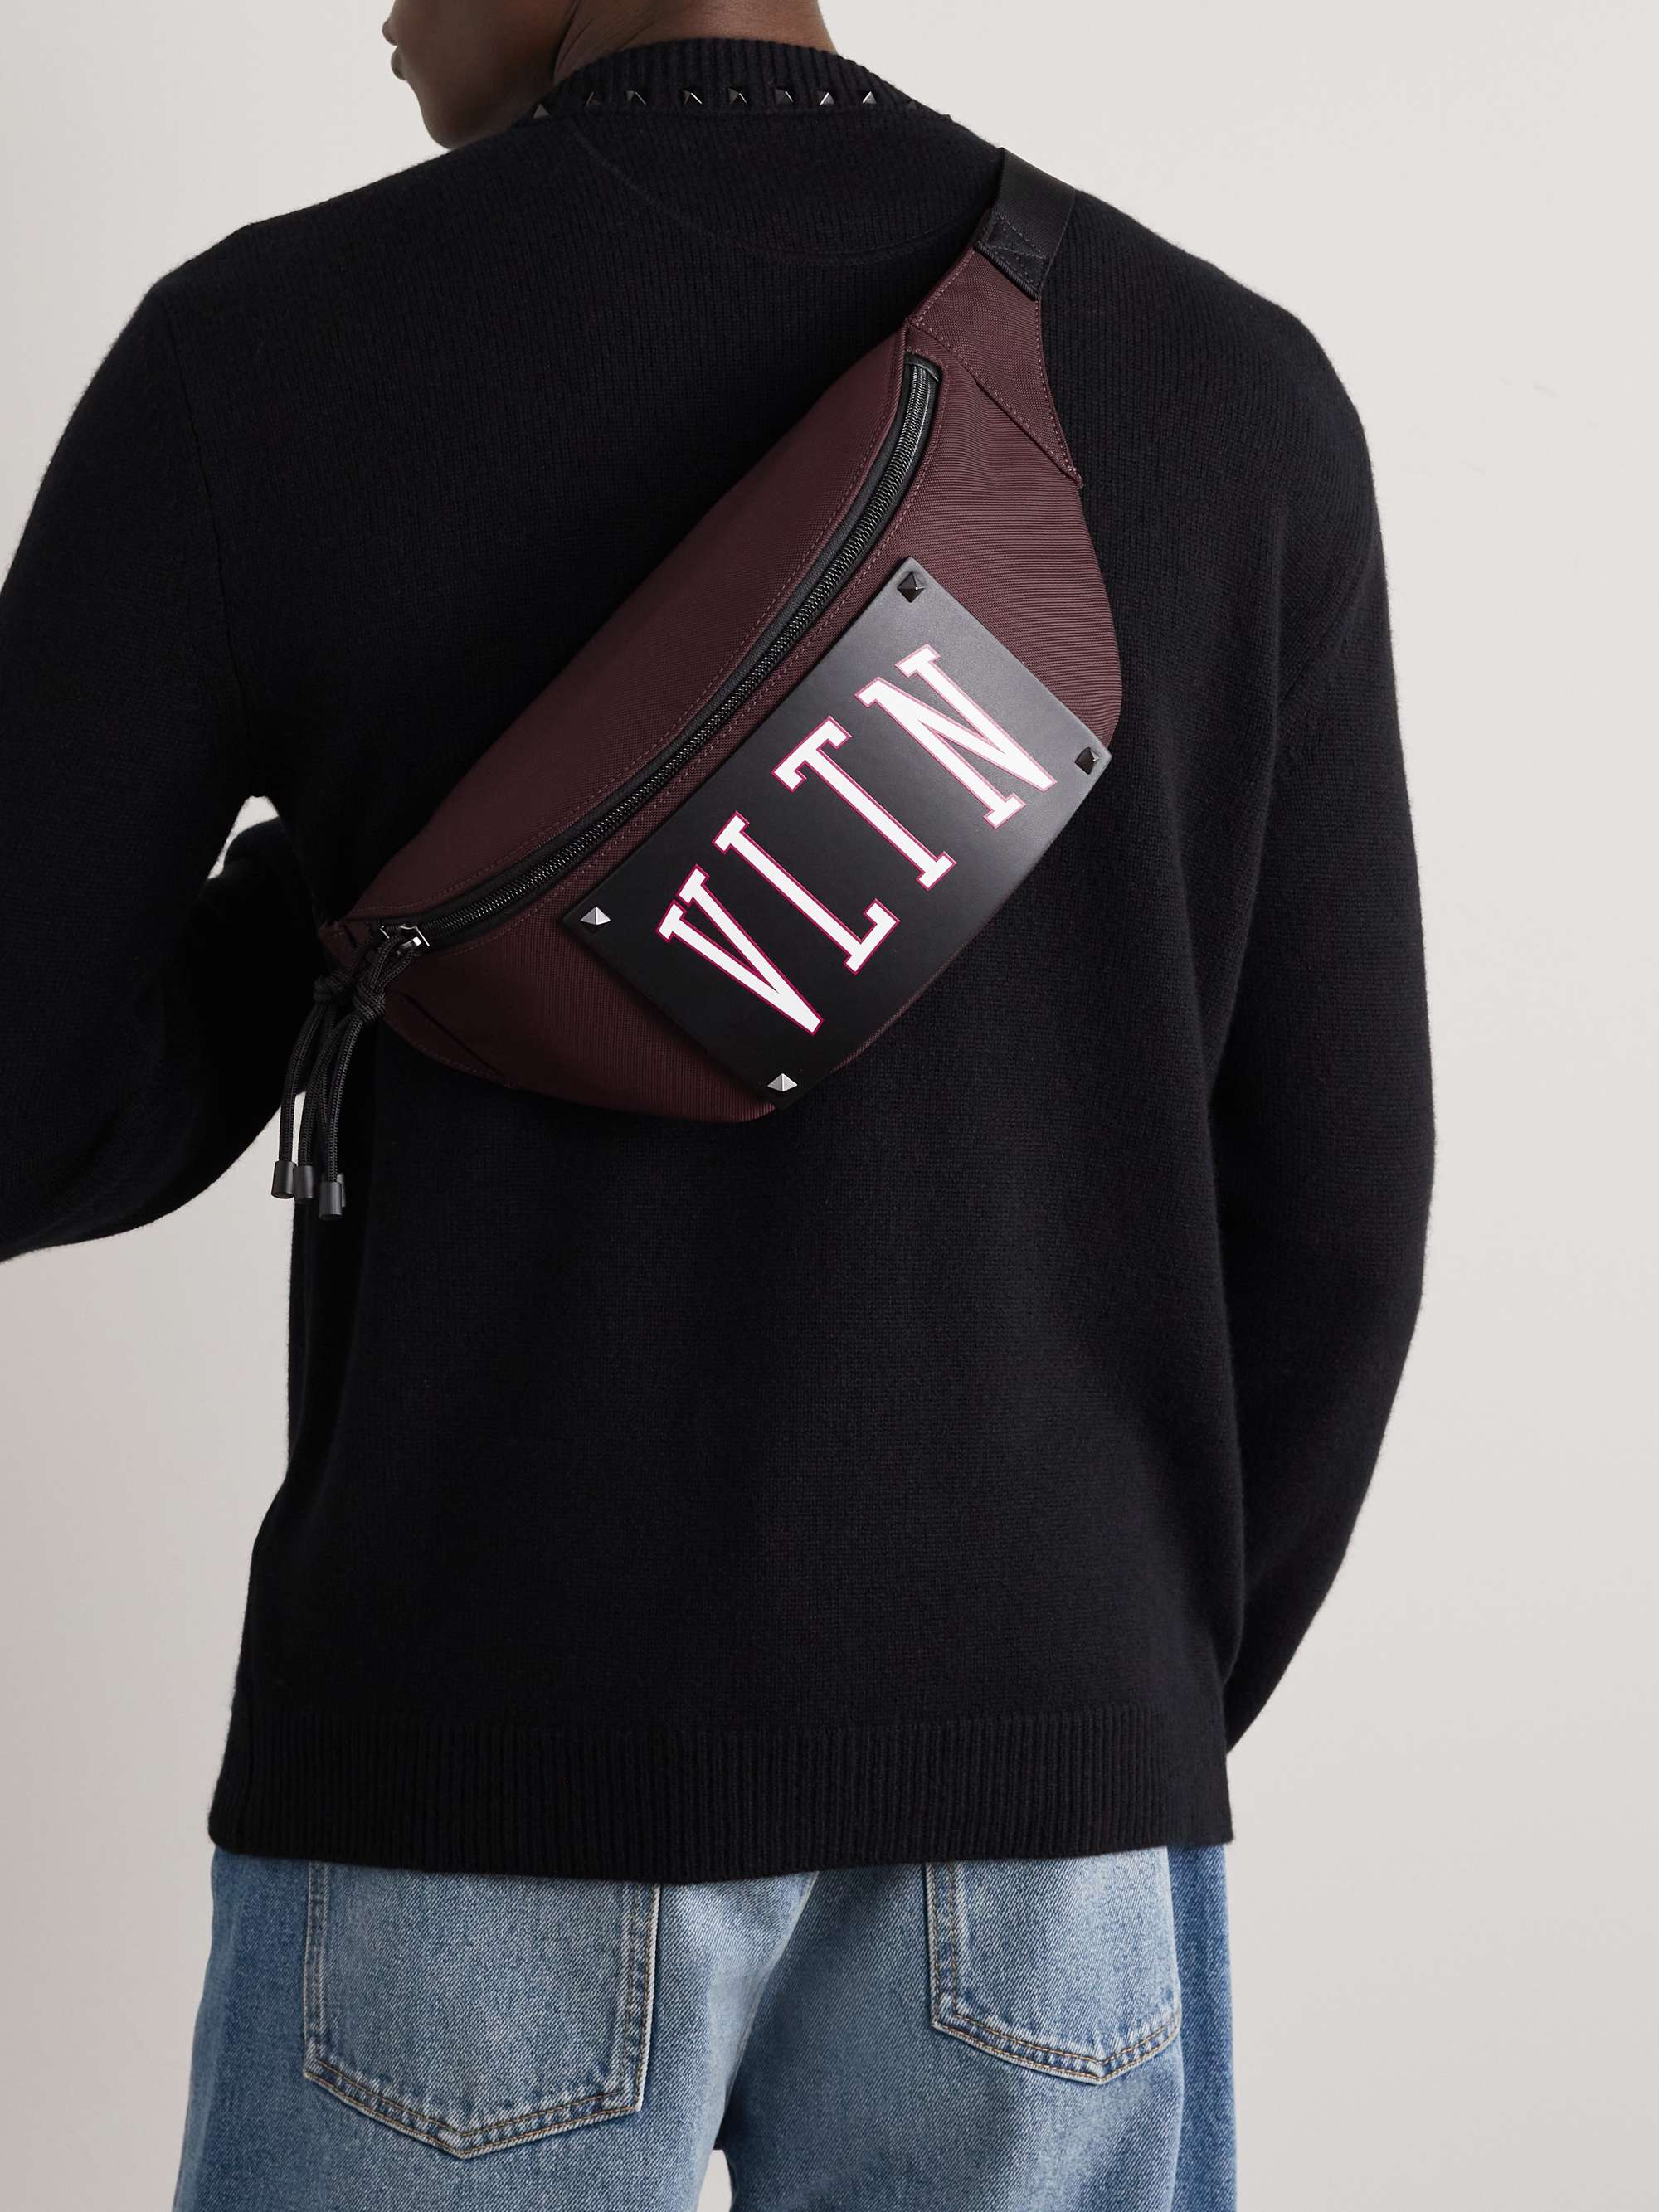 Wade udslettelse væv VALENTINO GARAVANI Valentino Garavani Logo-Print Leather-Trimmed Canvas Belt  Bag | MR PORTER